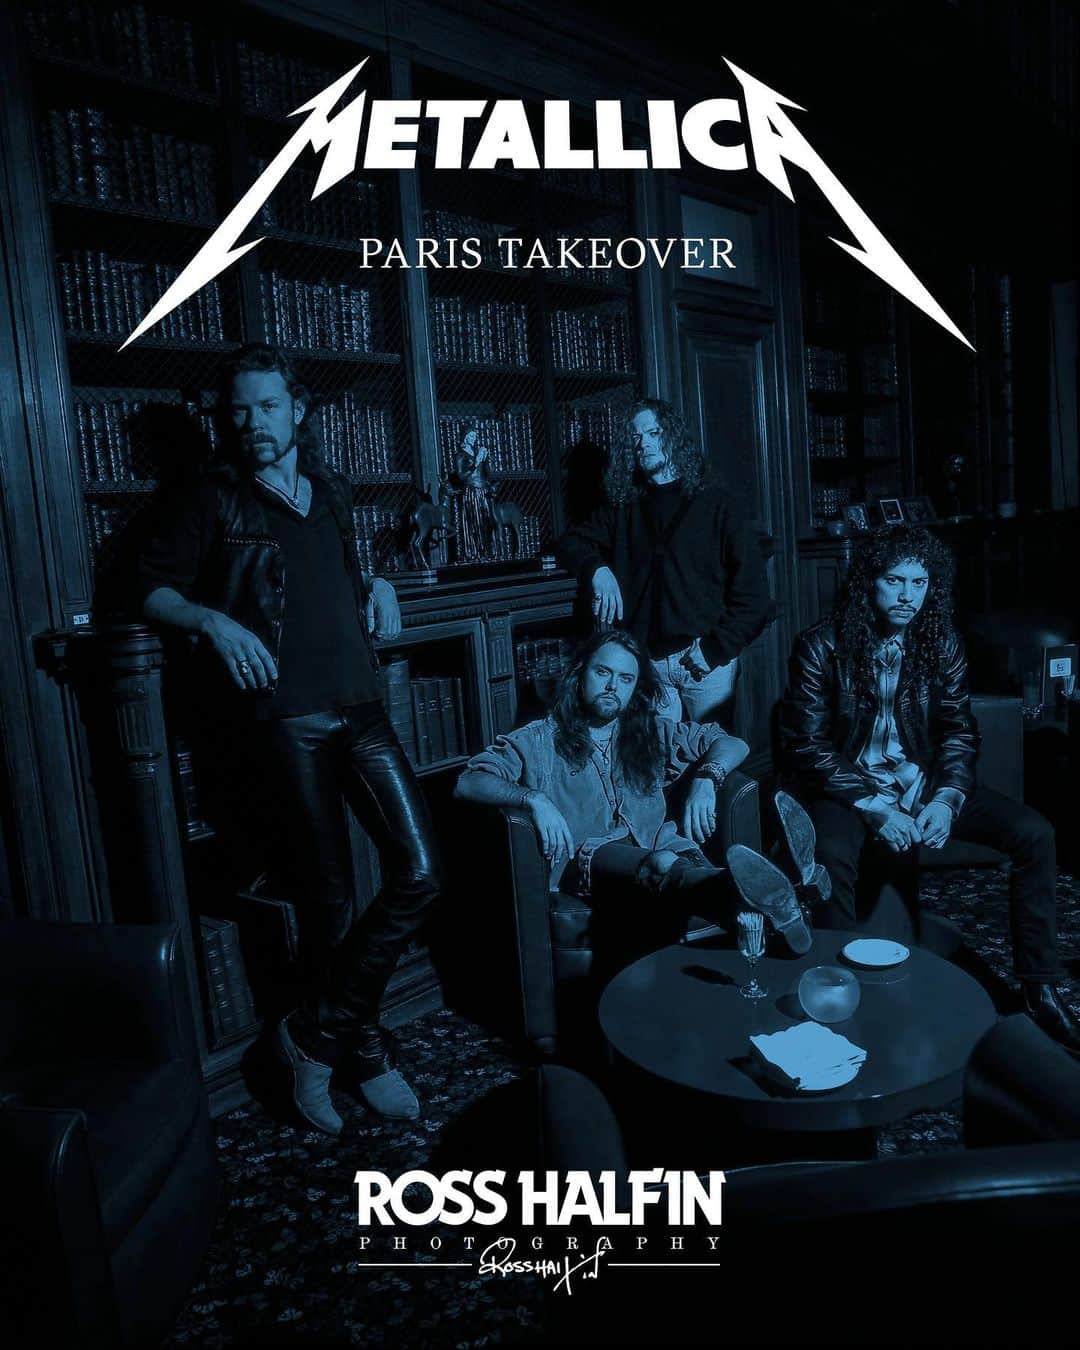 メタリカさんのインスタグラム写真 - (メタリカInstagram)「Metallica Paris Takeover  Ross Halfin will be discussing the book Metallica: The Black Album in Black & White at the MK2 Bibliothèque as part of Metallica's Paris Takeover on Thursday May 18th, followed by a signing session for the French edition of the book, published by @glenatlivres   Tickets for this special event are available from @mk2 or 👉 Linkinbio   #metallica #rosshalfin @reelartpress」5月12日 23時26分 - metallica